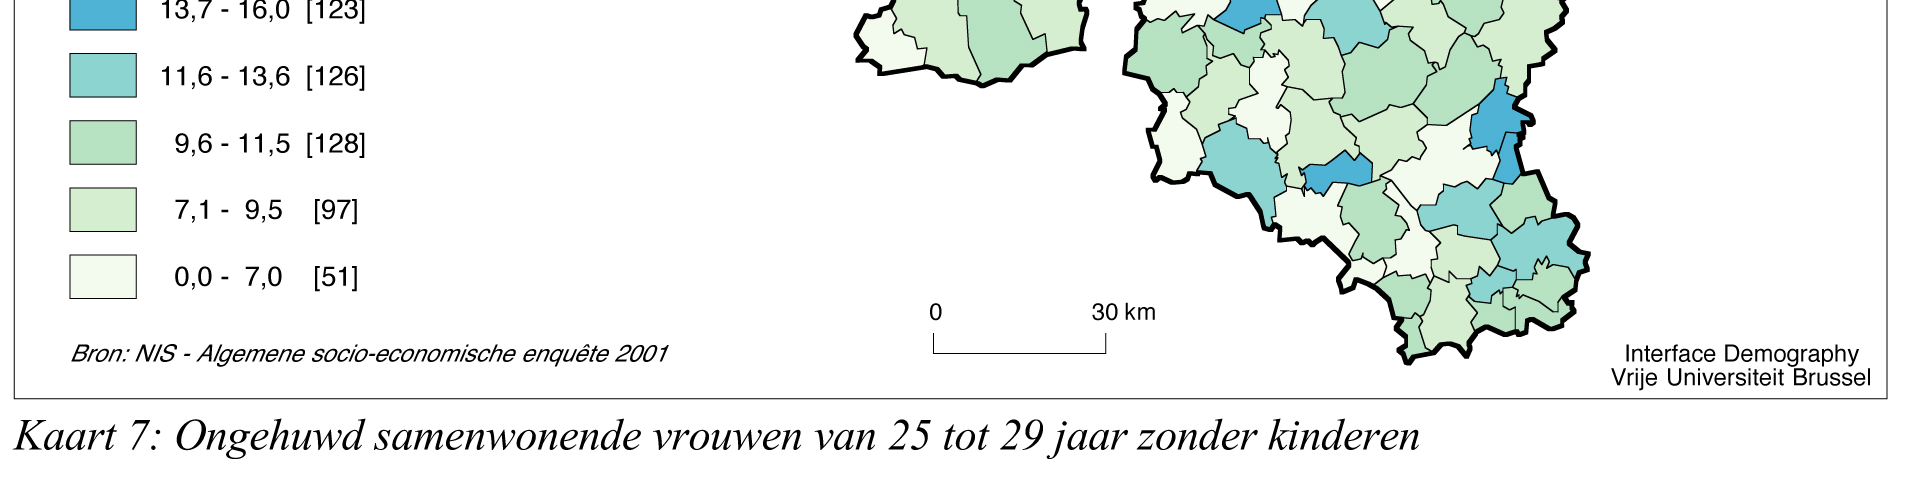 gemeenten ligt het aandeel ongehuwd samenwonenden boven de 20%. Kaart 1 toont hoe het fenomeen van ongehuwd samenwonen zich nu duidelijk heeft doorgezet in Vlaanderen.